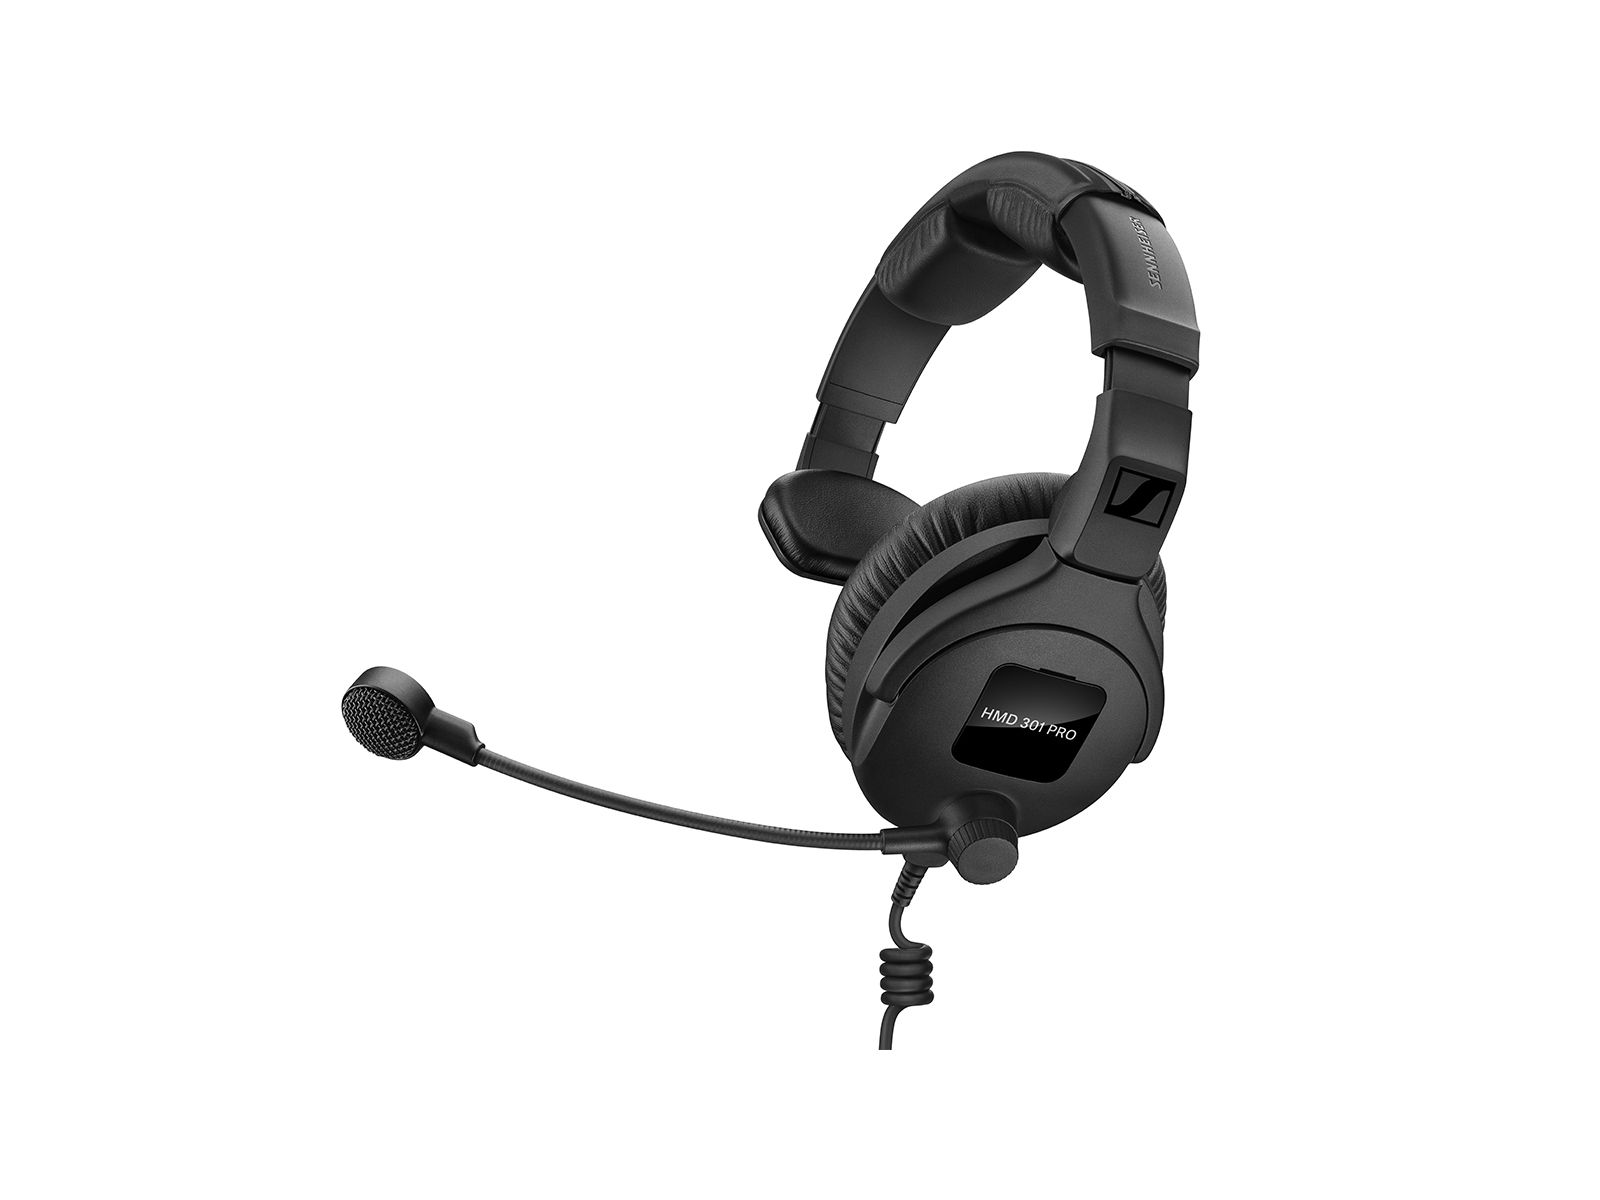 Sennheiser HMD 301 PRO | Broadcast-Headset einseitig, 64 Ω, Mikrofon, Hyperniere, dynamisch, Anschlusskabel separat